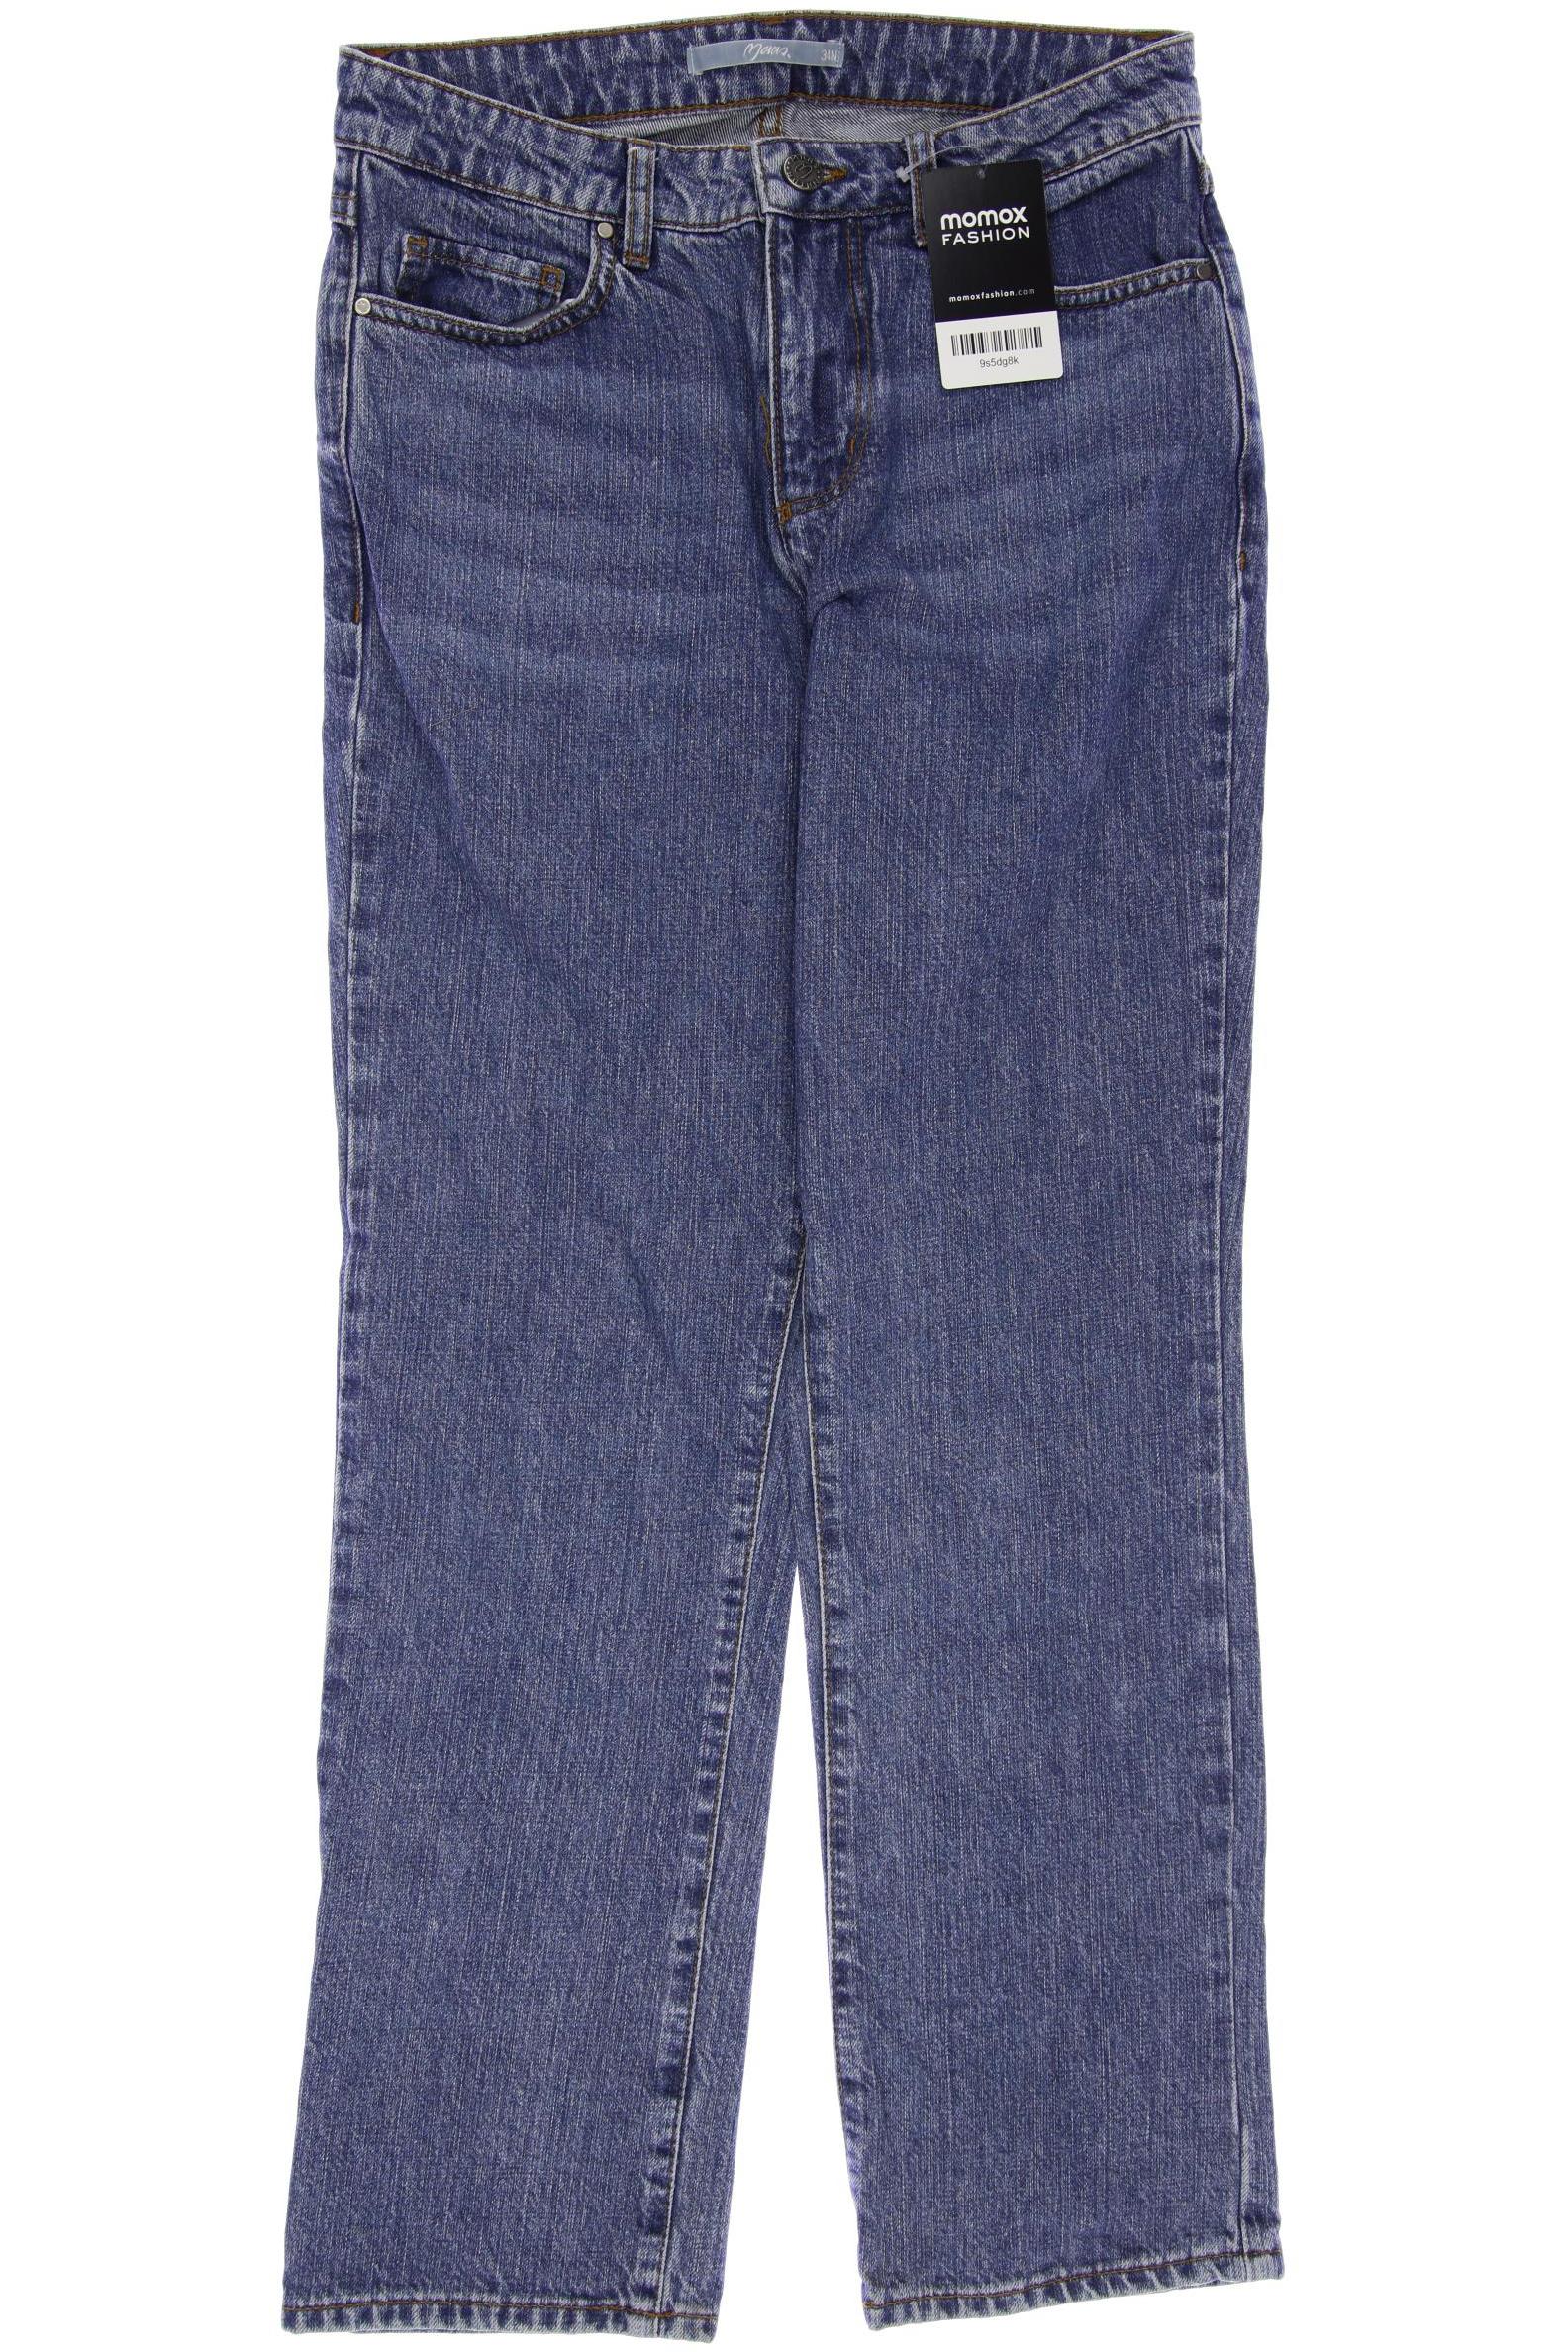 Maas Damen Jeans, blau, Gr. 34 von Maas